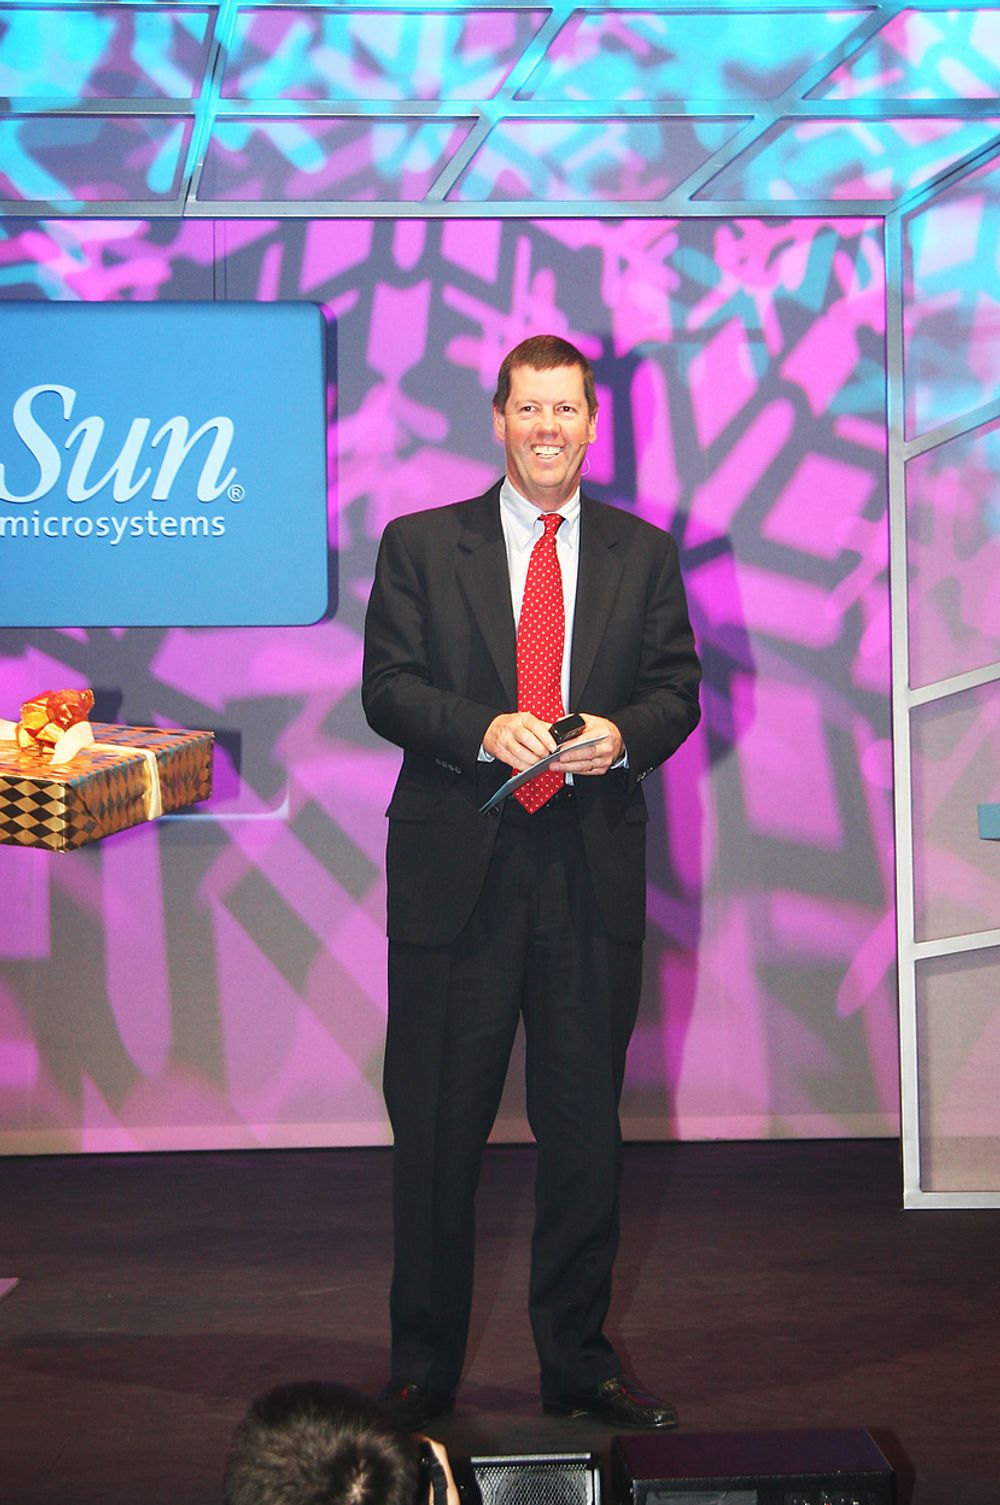 VI HAR LEDELSEN:Suns toppsjef, Scott McNealy mener selskapet ligger årevis foran alle andre i prosessordesign.